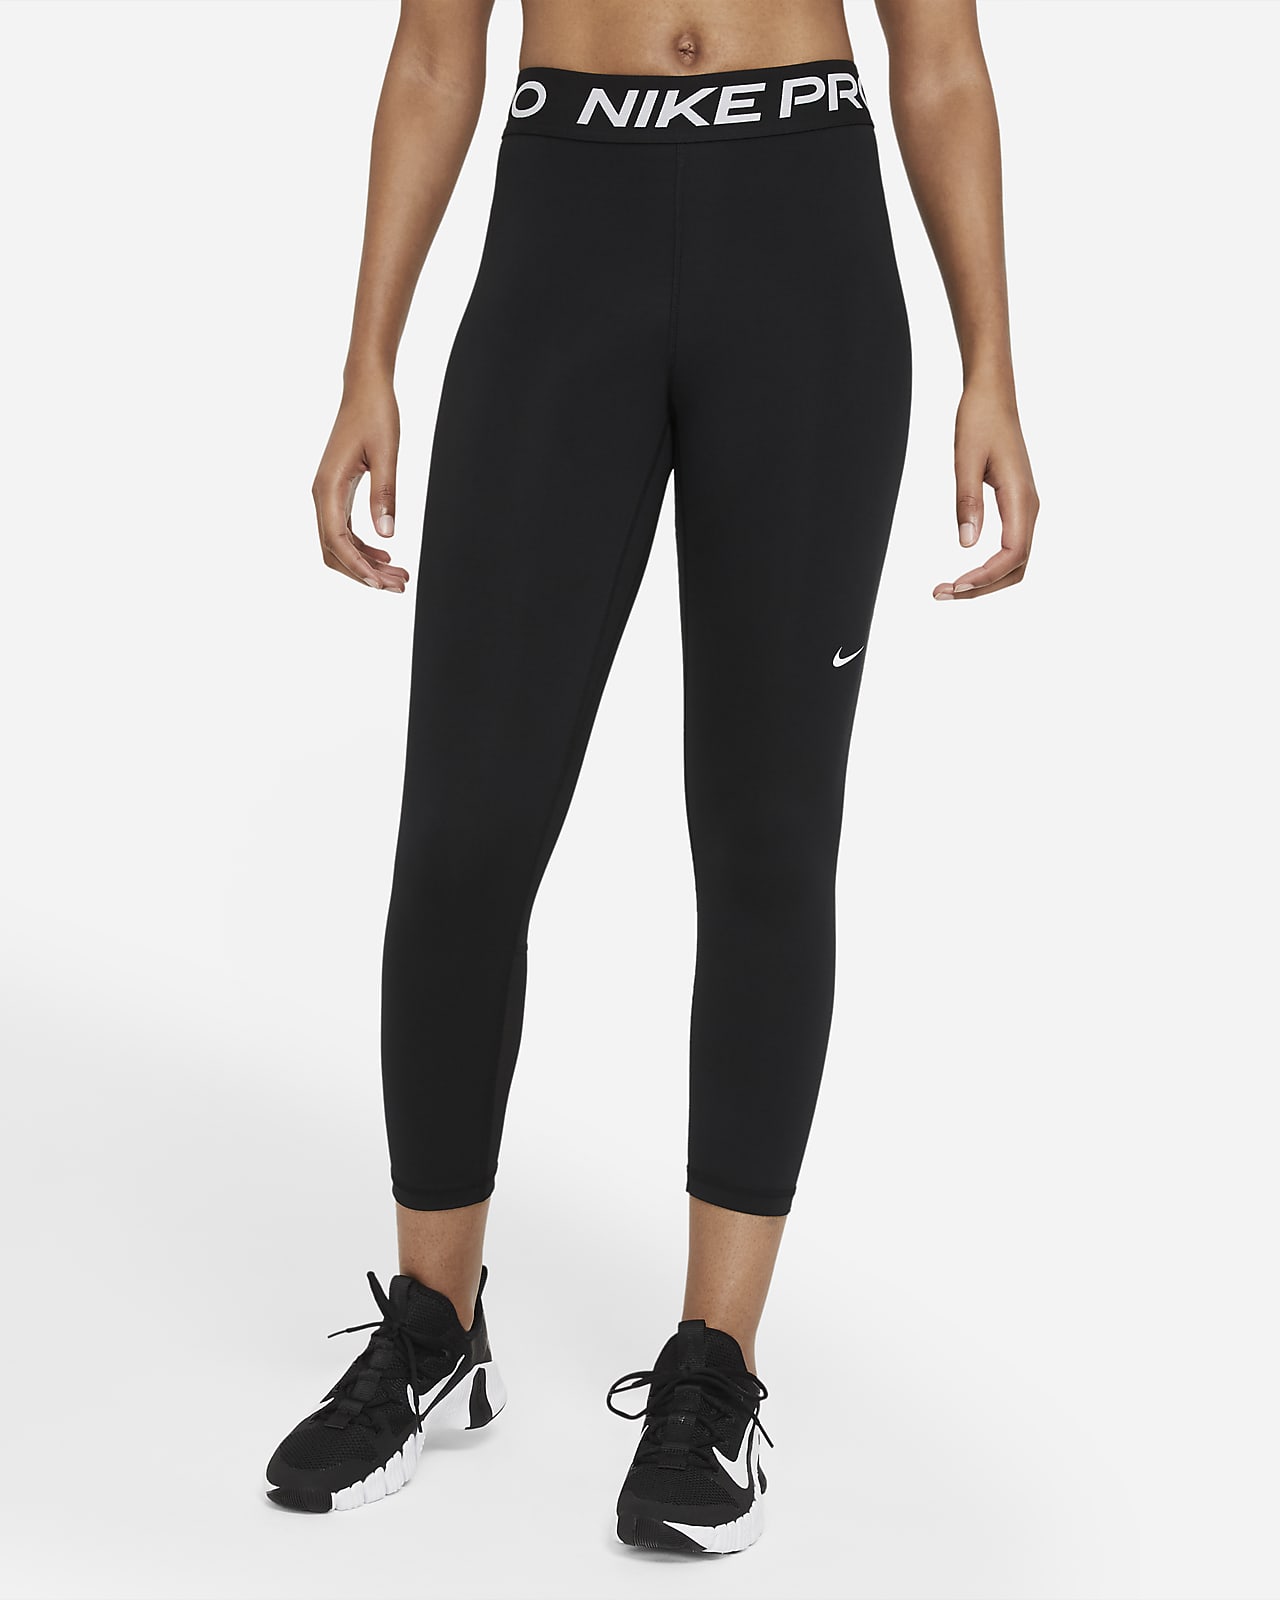 Damskie legginsy ze średnim stanem o skróconym kroju ze wstawkami z siateczki Nike Pro 365